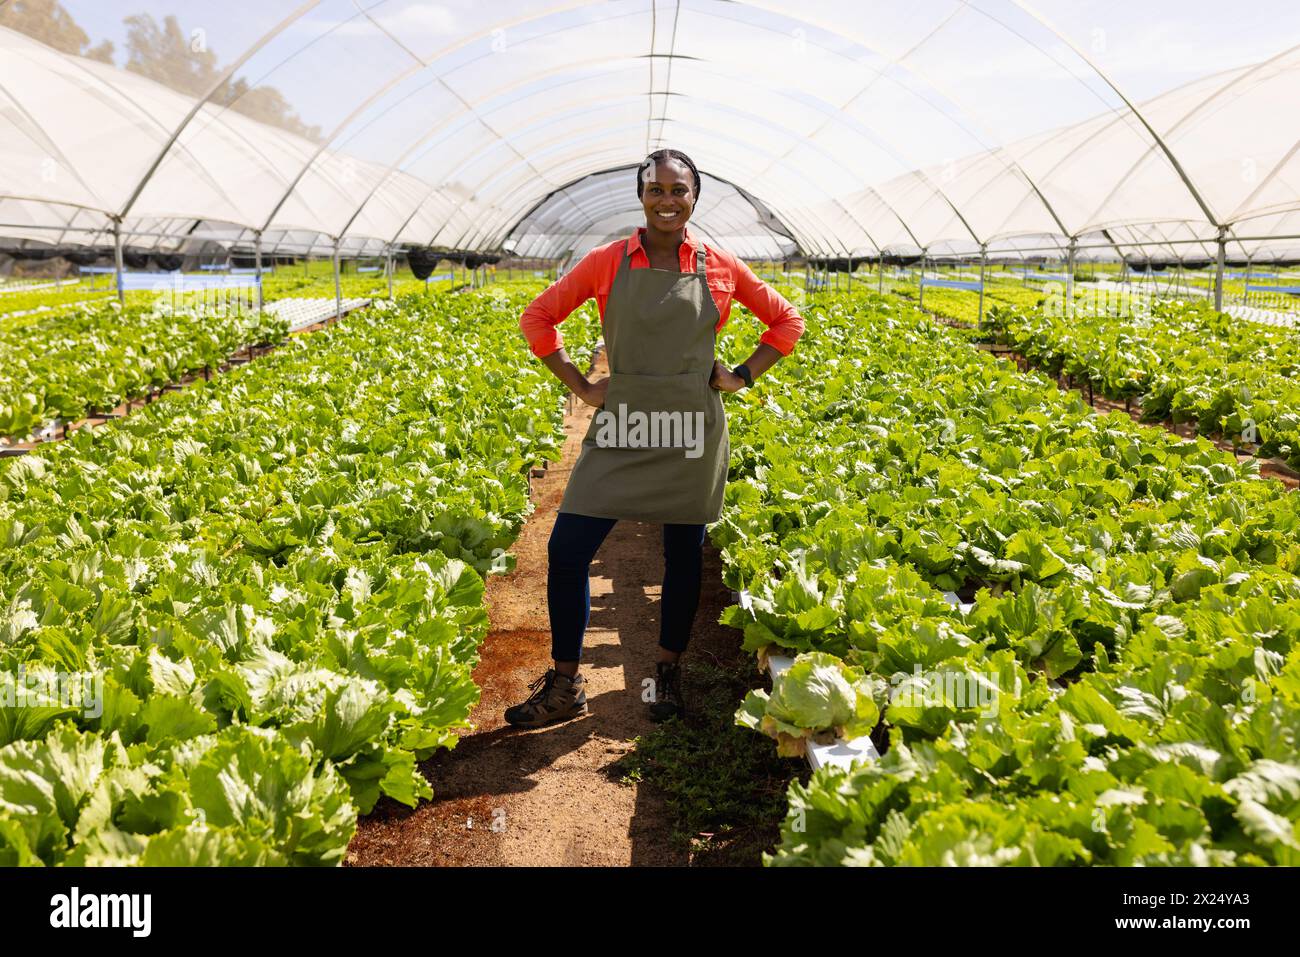 Jeune agricultrice afro-américaine debout dans une ferme hydroponique à effet de serre, les mains sur les hanches Banque D'Images